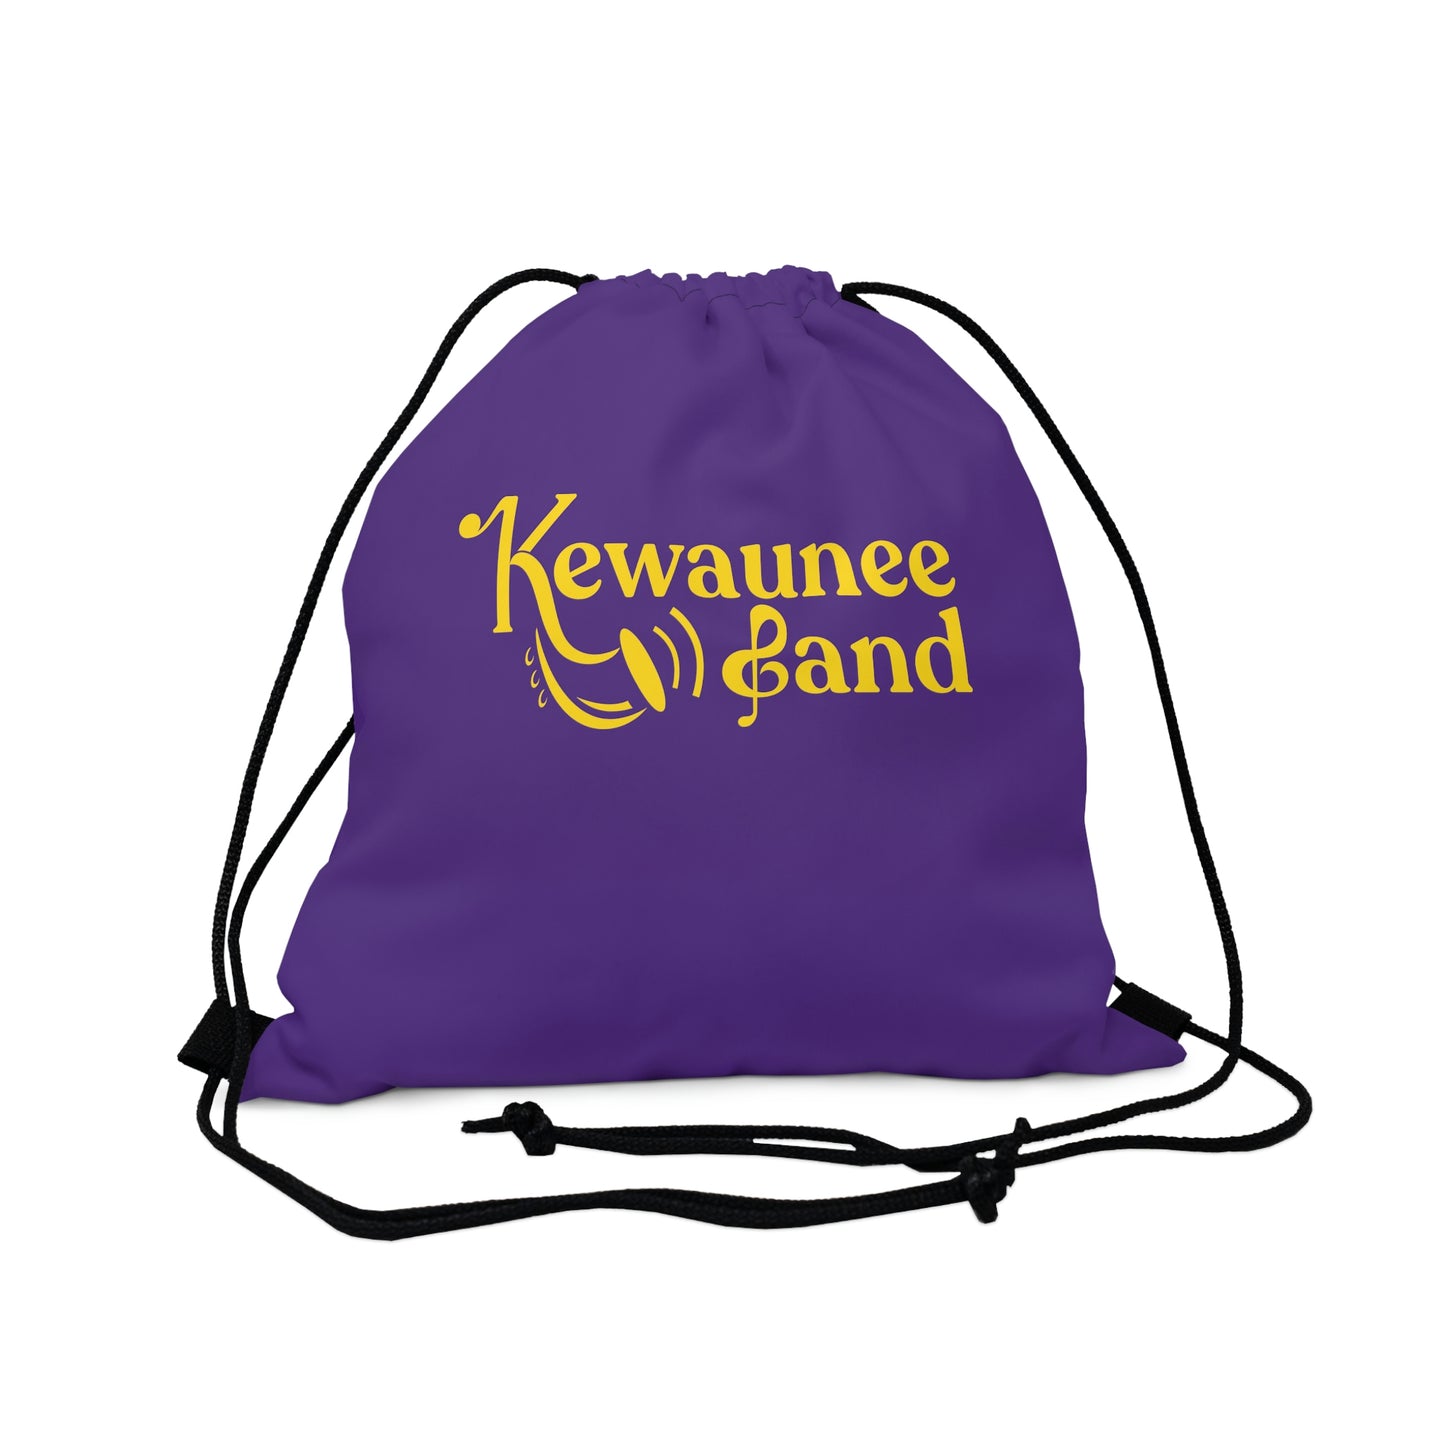 Kewaunee Band Drawstring Bag